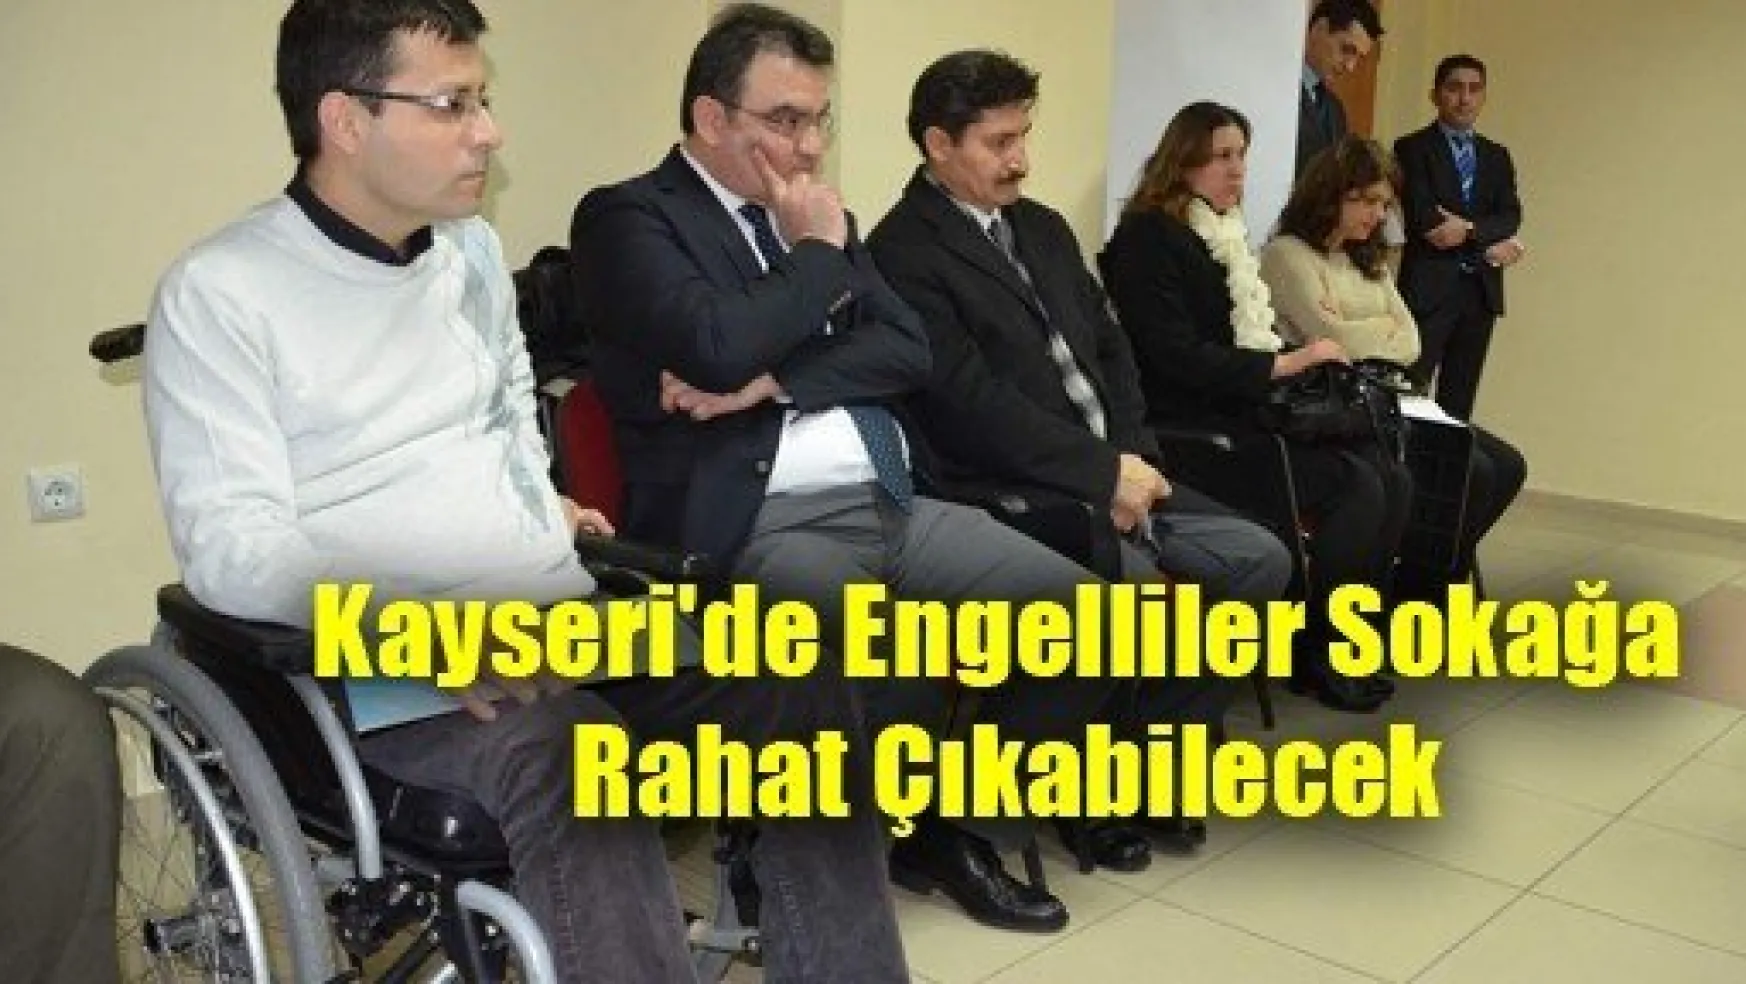 Kayseri'de Engelliler Sokağa Rahat Çıkabilecek